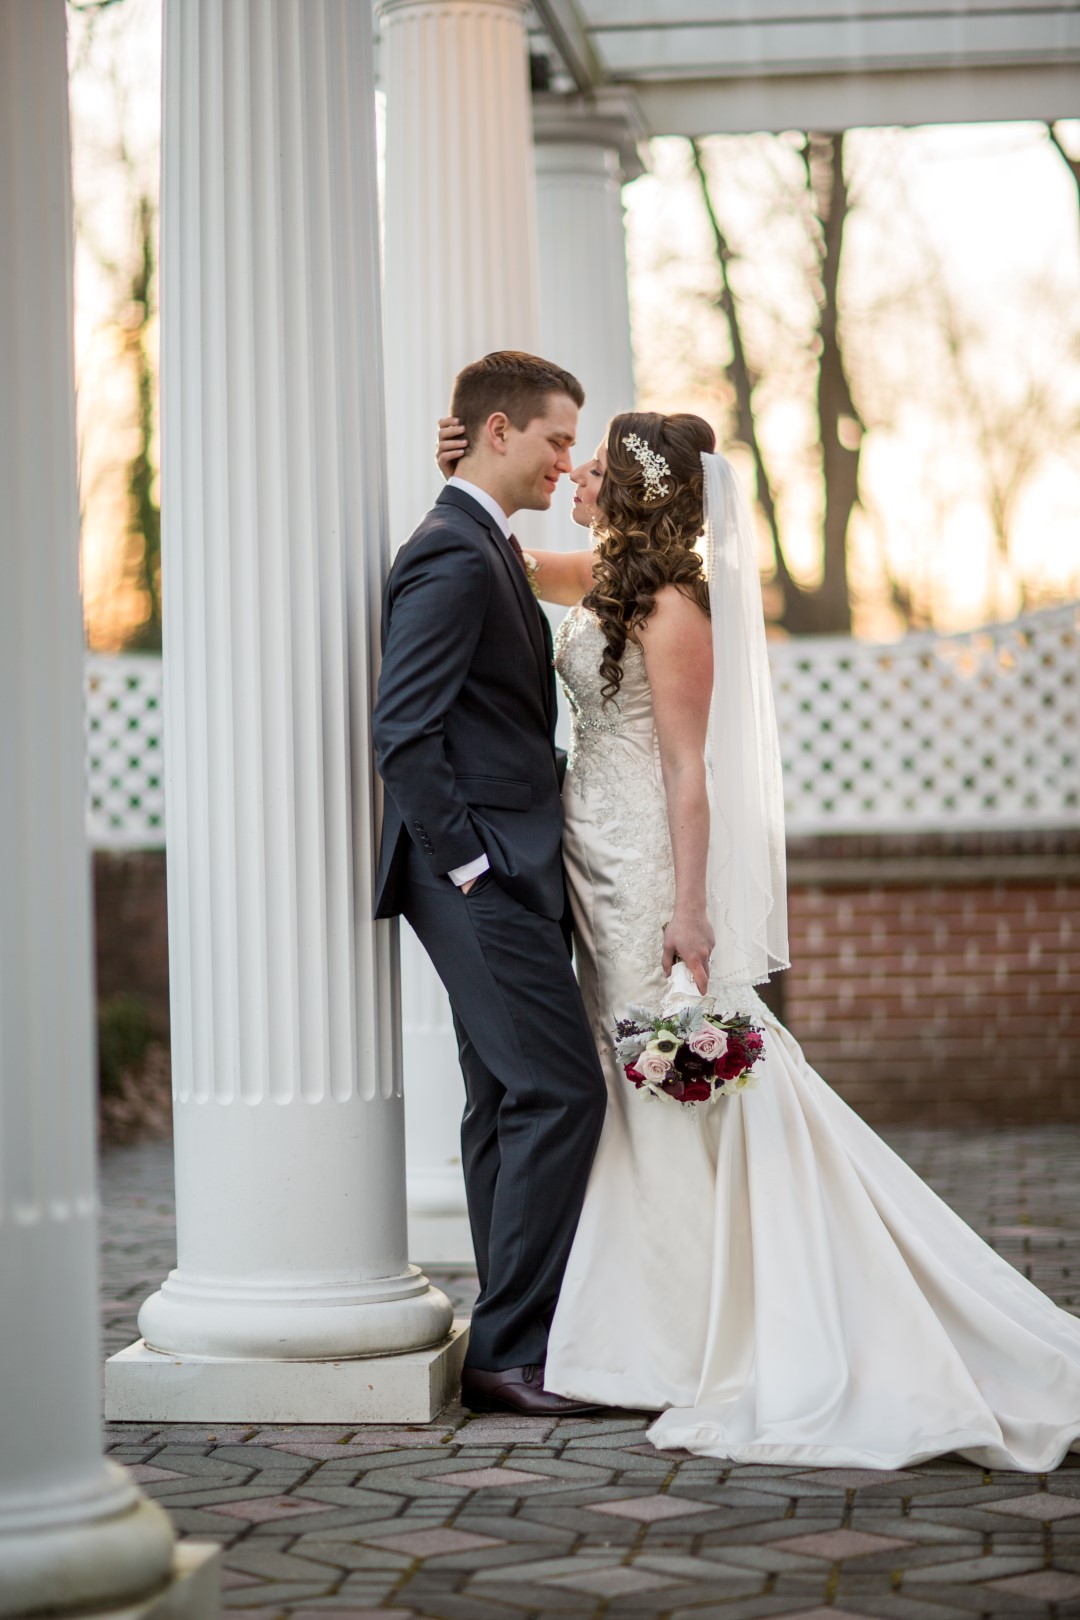 Wedding Poses | 10 Basic Poses for Wedding Photographers